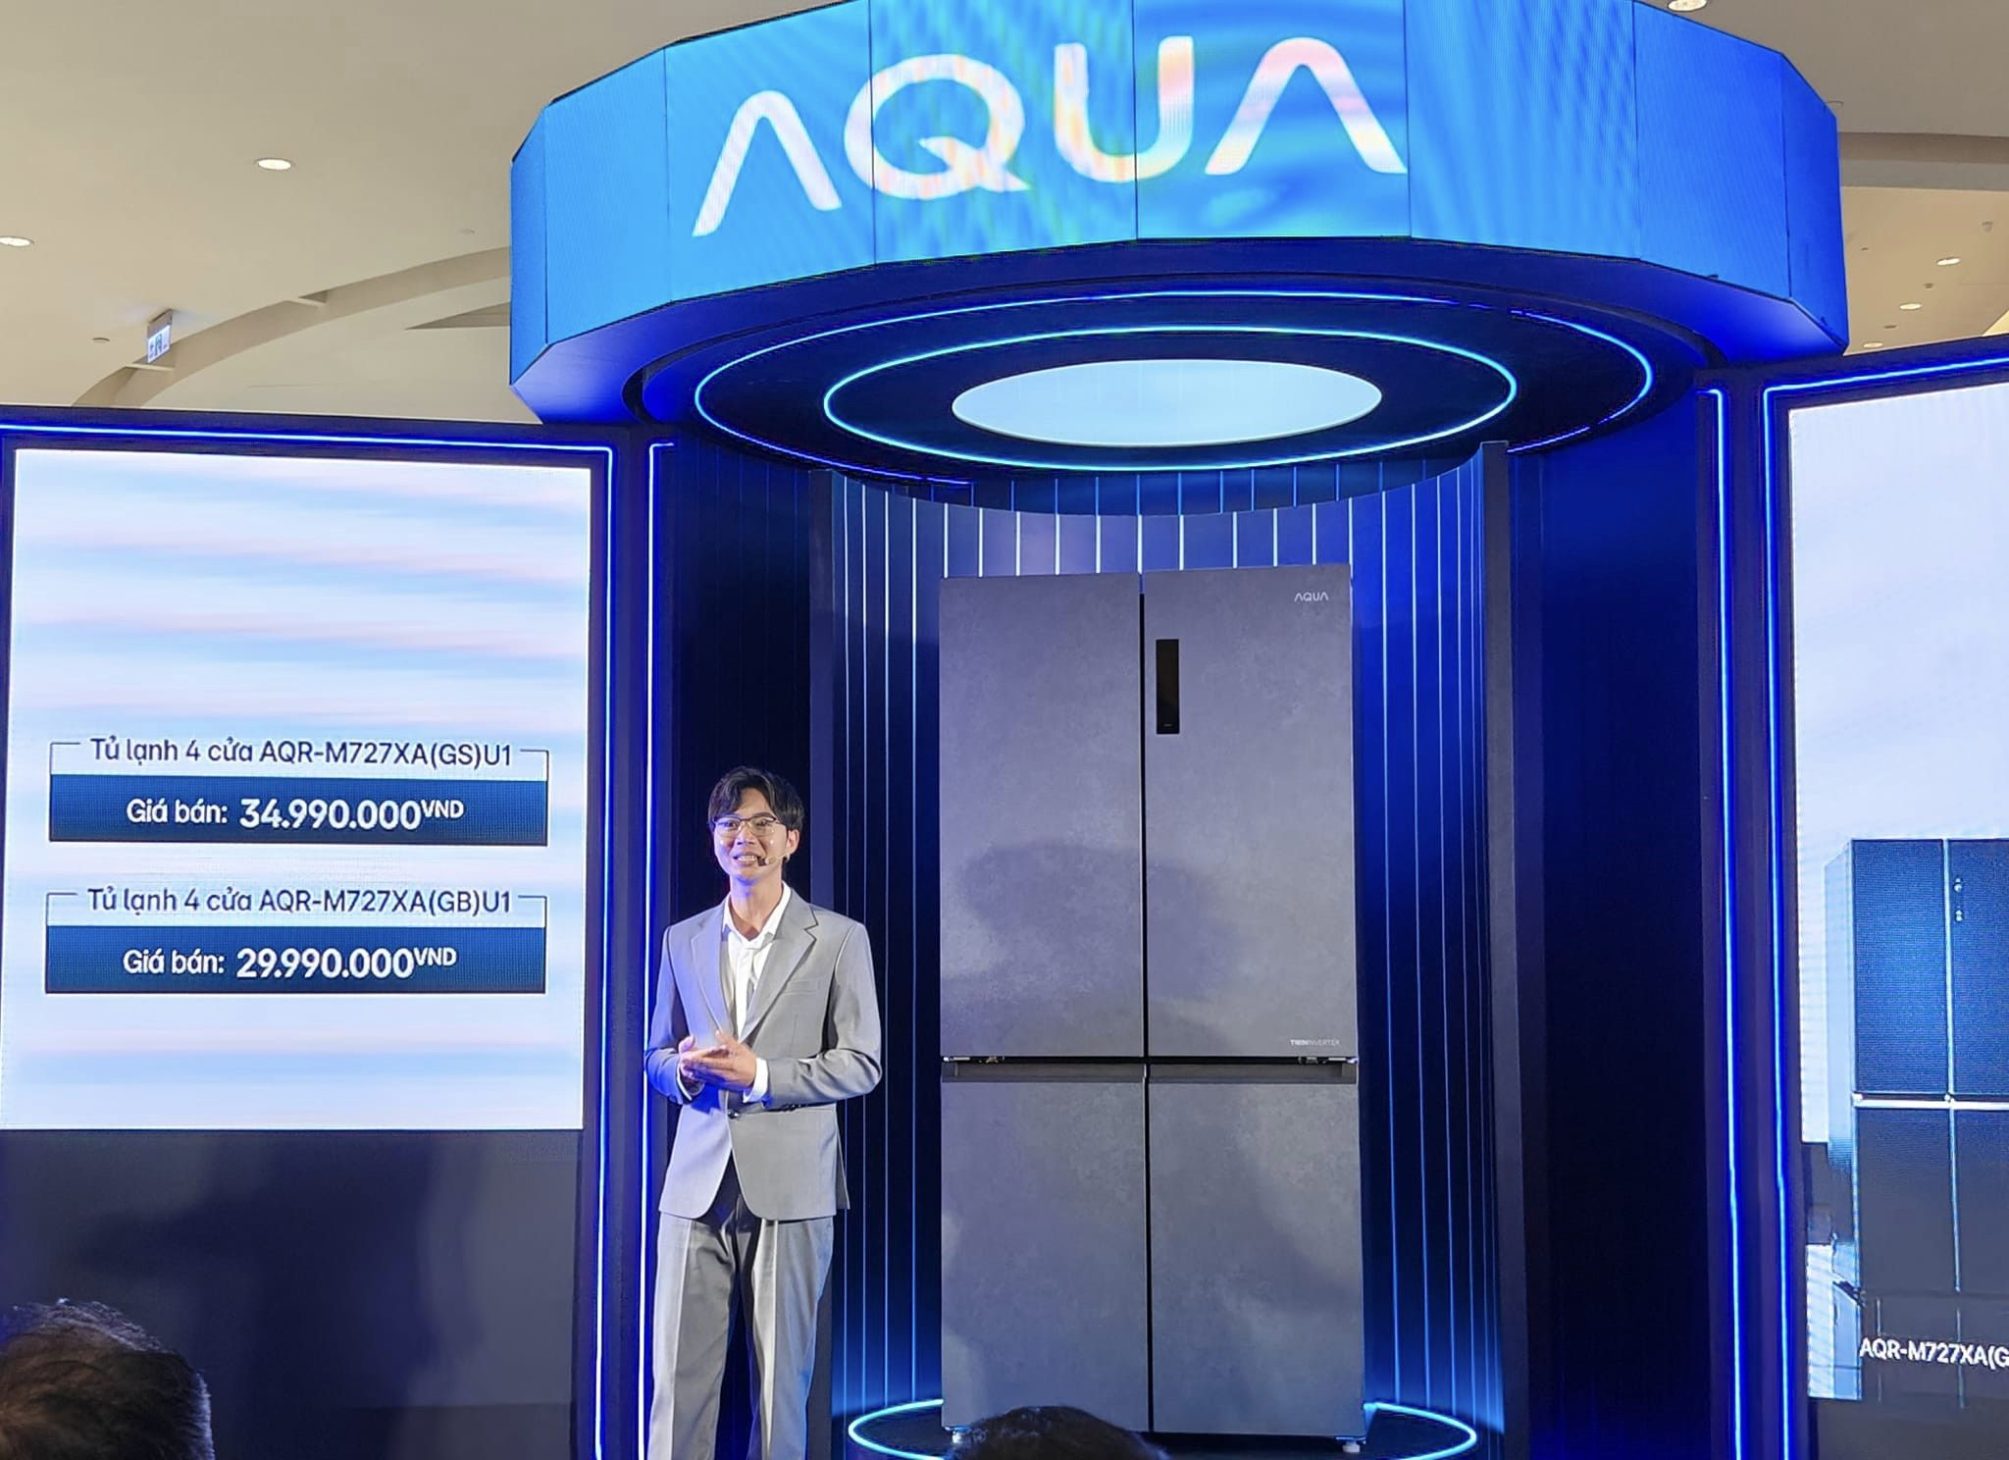 AQUA ViewFresh, tủ lạnh thông minh 4 cửa thiết kế đẹp, giá từ 30 triệu đồng - 421569042 7889455921068997 1282871799424967217 n